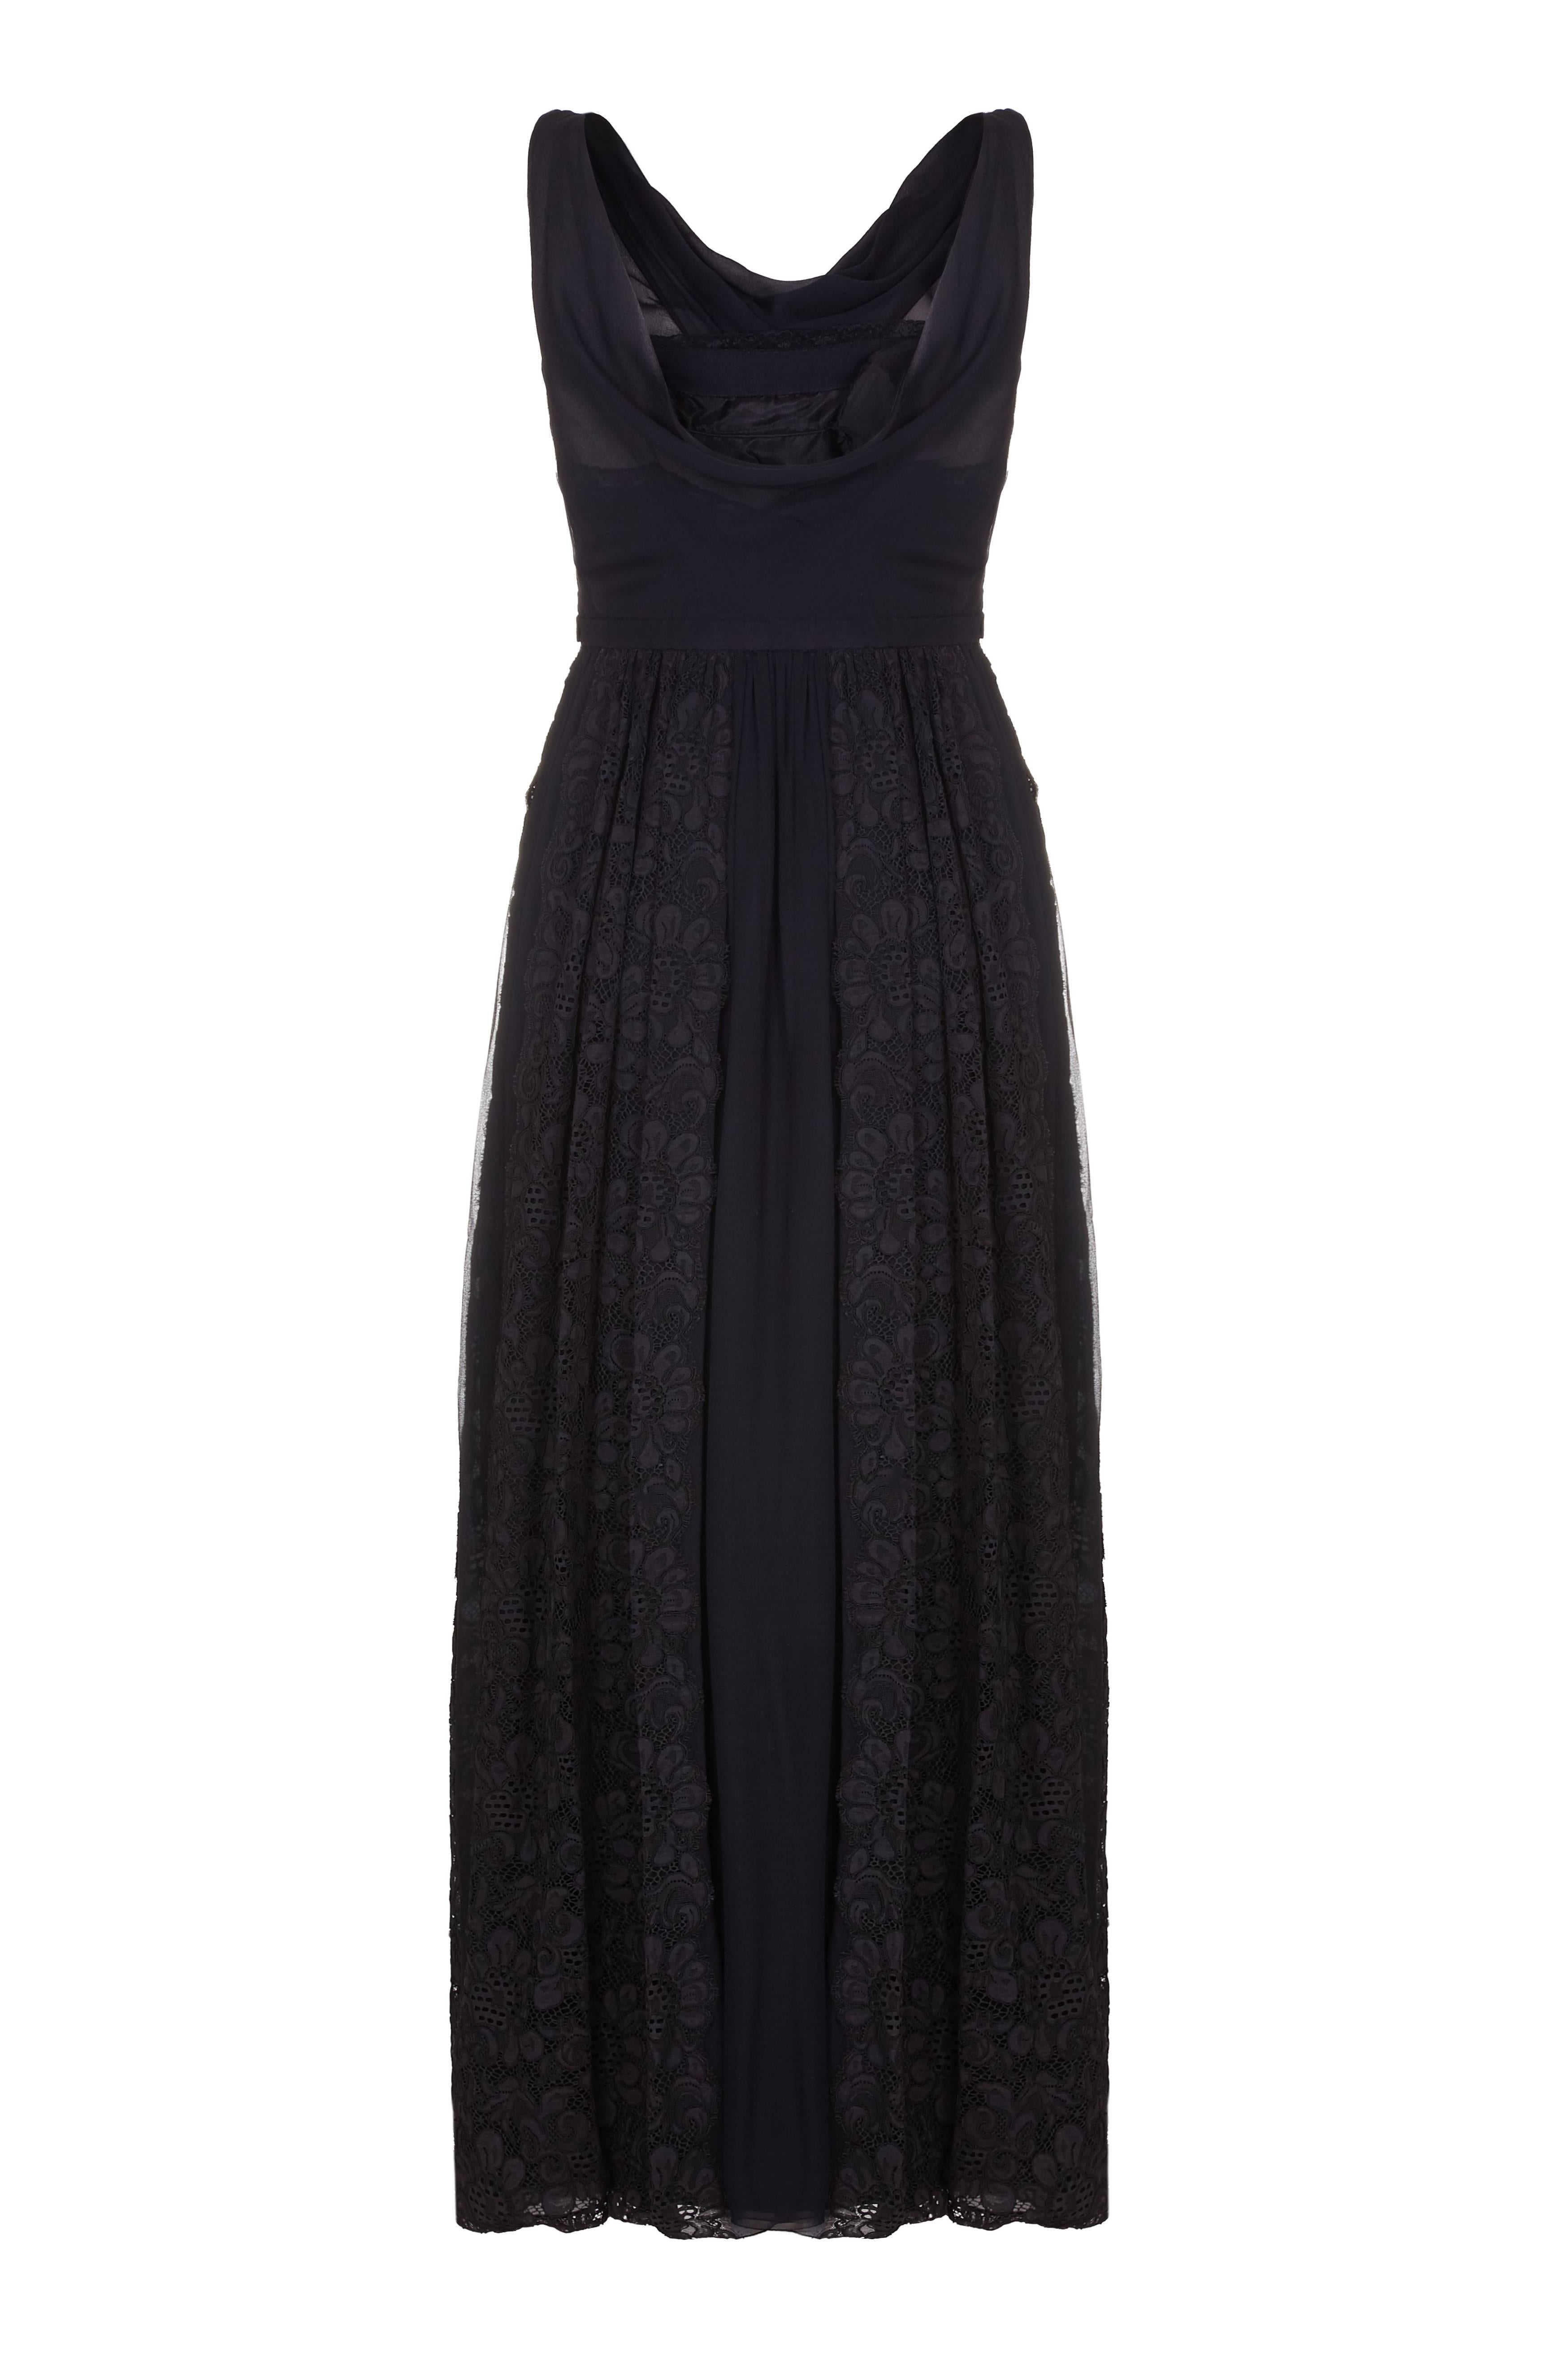 Dieses schwarze Abendkleid aus Seide und Spitze von Mainbocher aus den 1950er Jahren ist von außergewöhnlicher Qualität und weist einige sehr elegante Details auf. Das Mieder ist vollständig gefüttert und die Büste ist leicht gepolstert, um